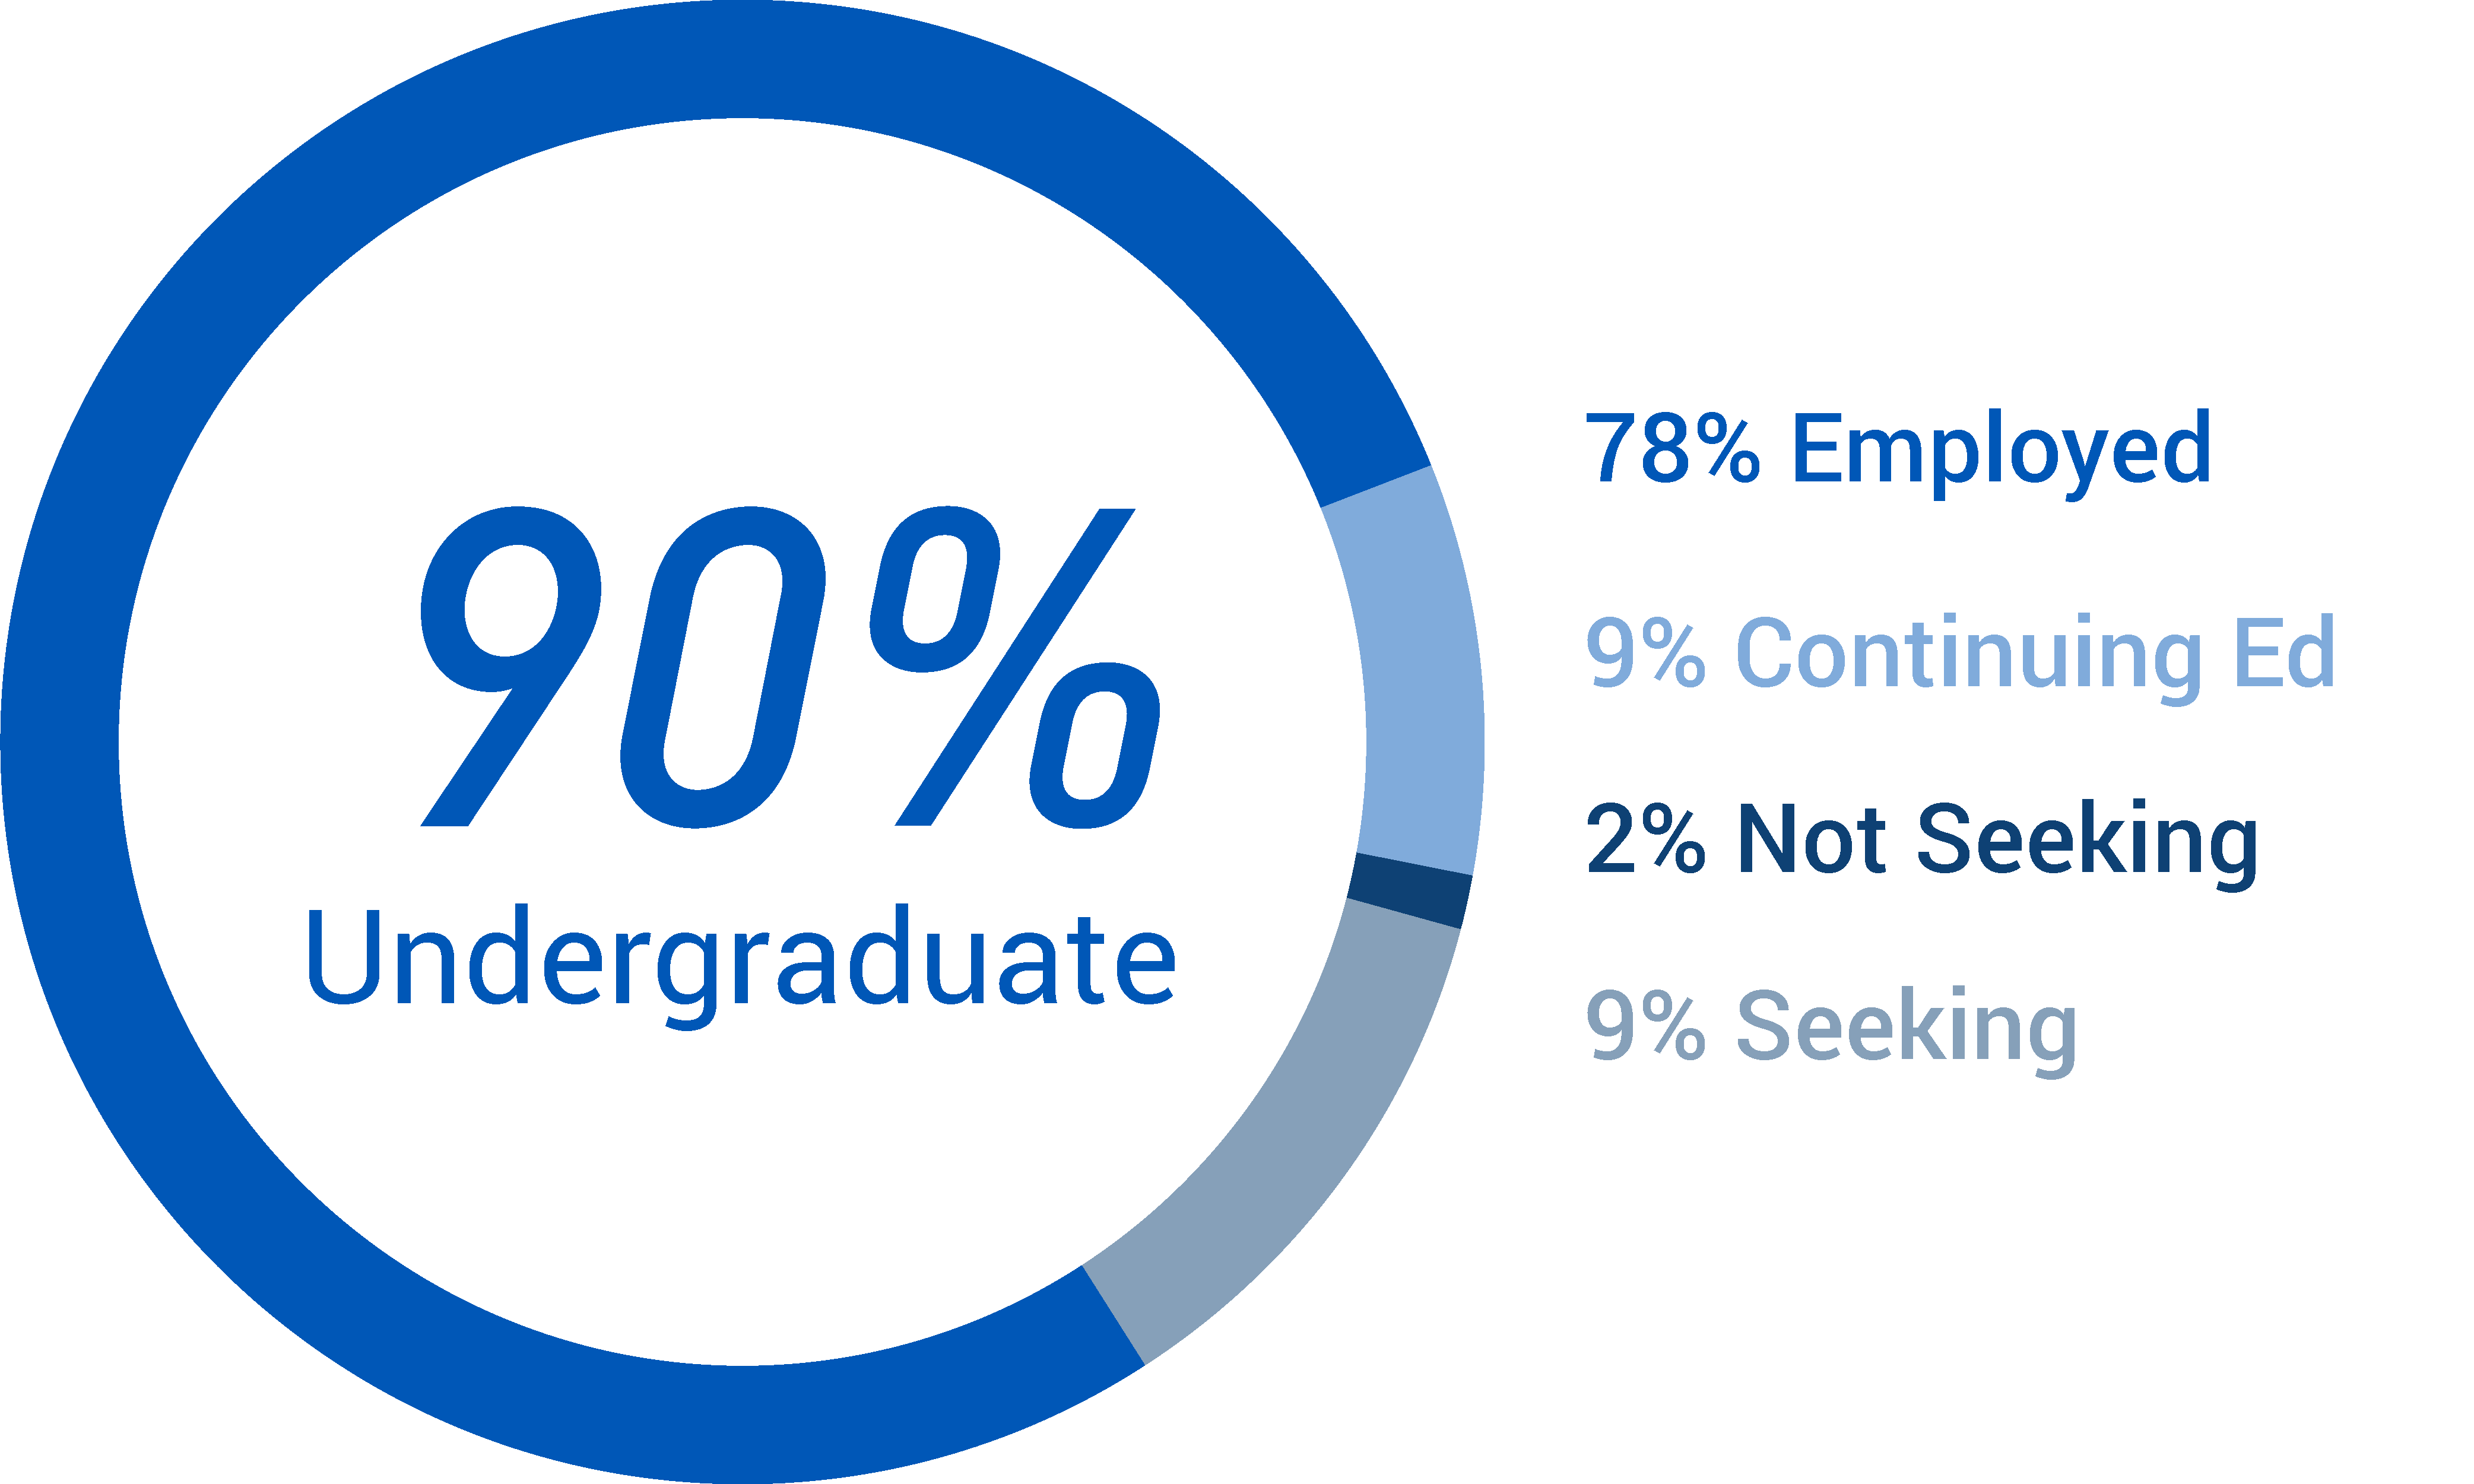 90% of undergraduate students employed